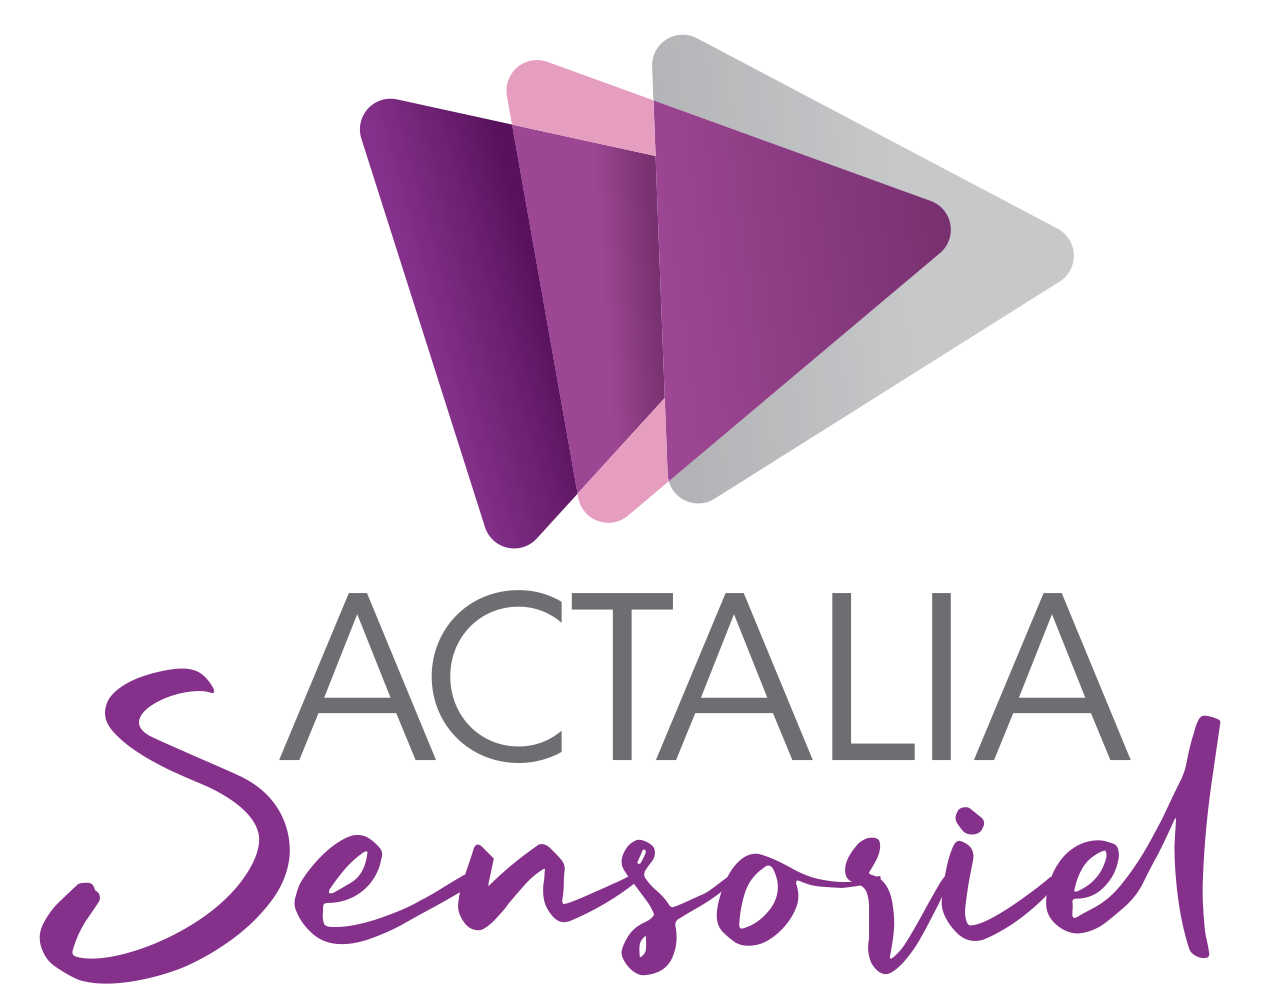 ACTALIA Sensoriel